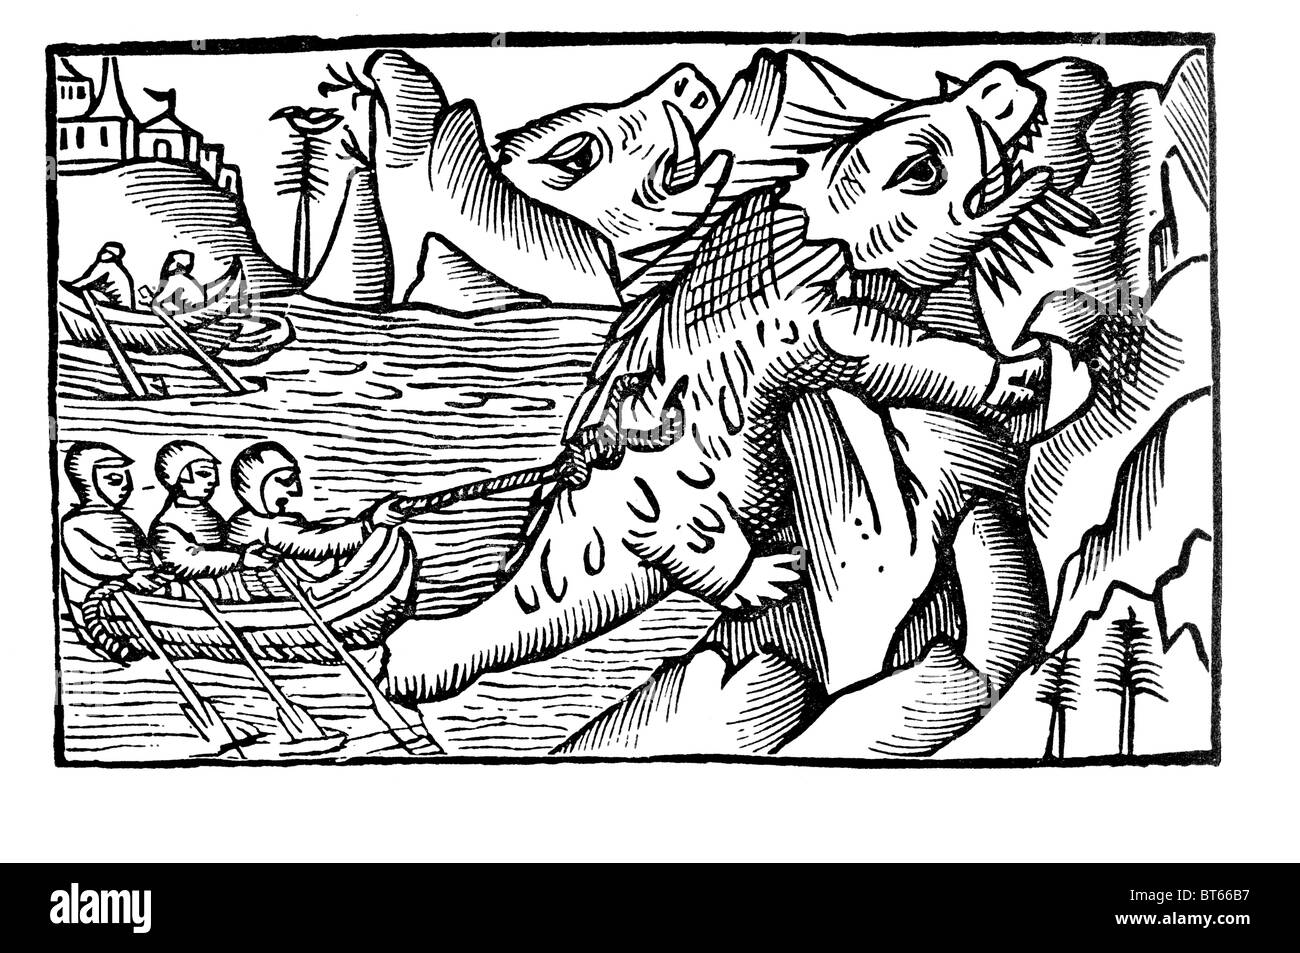 Walross jagen Olaus Magnus 1555 (Odobenus Rosmarus) große flippered Meeressäuger diskontinuierliche circumpolar Verteilung Arktis Oc Stockfoto